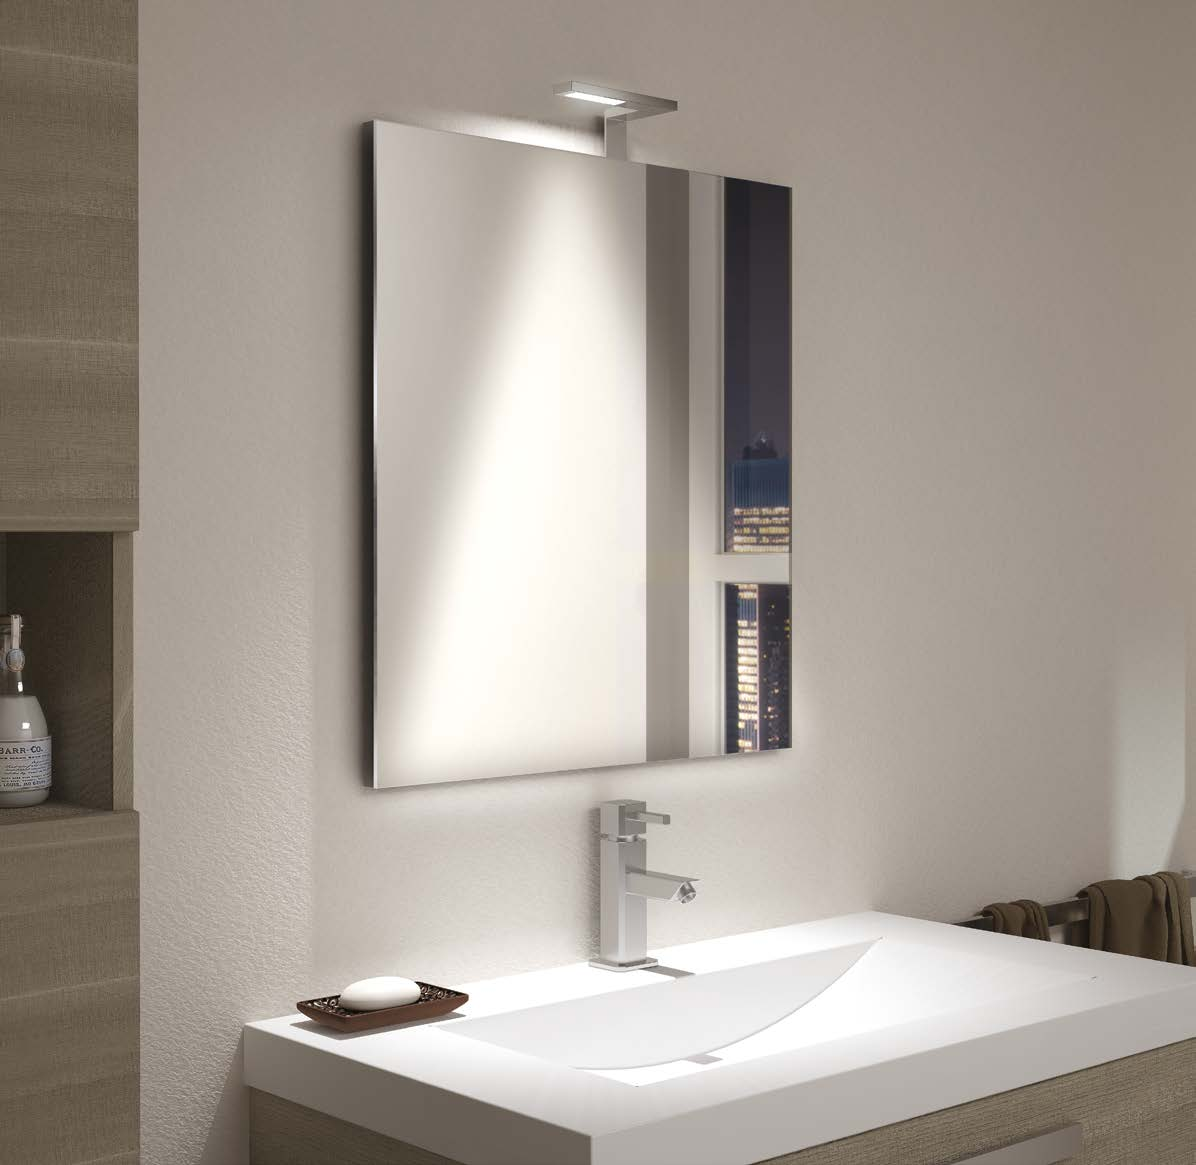 30 K-1 K-1 design DOMUS Line Applique per specchiera da bagno per illuminazione di accento Materiali: lega metallica Finiture: cromo lucido Sorgente luminosa: modulo LED COB Tipo di applicazione: